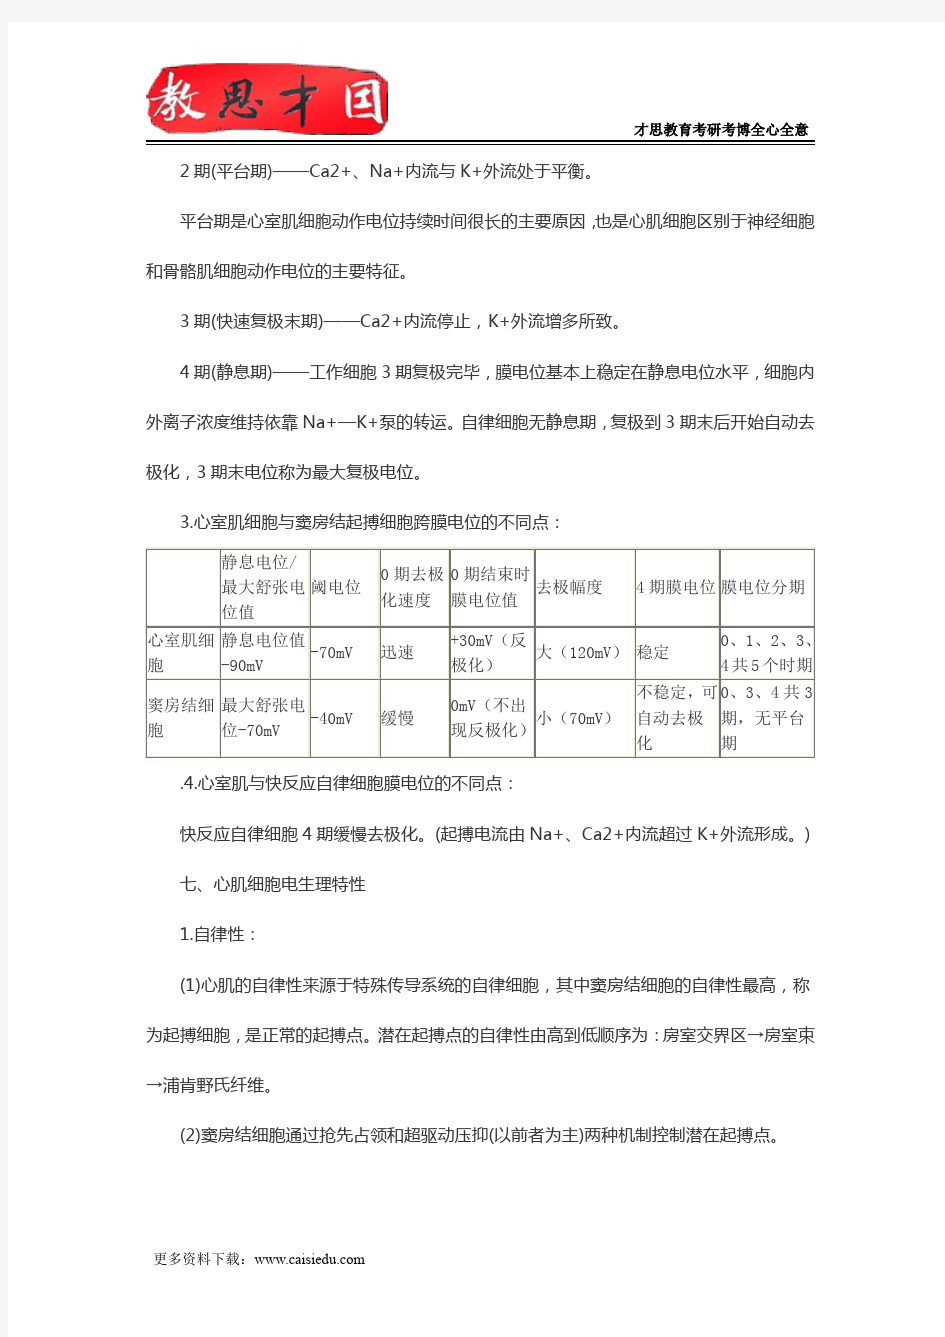 2016年北京协和医学院306西医综合考研生理学复习笔记(七)